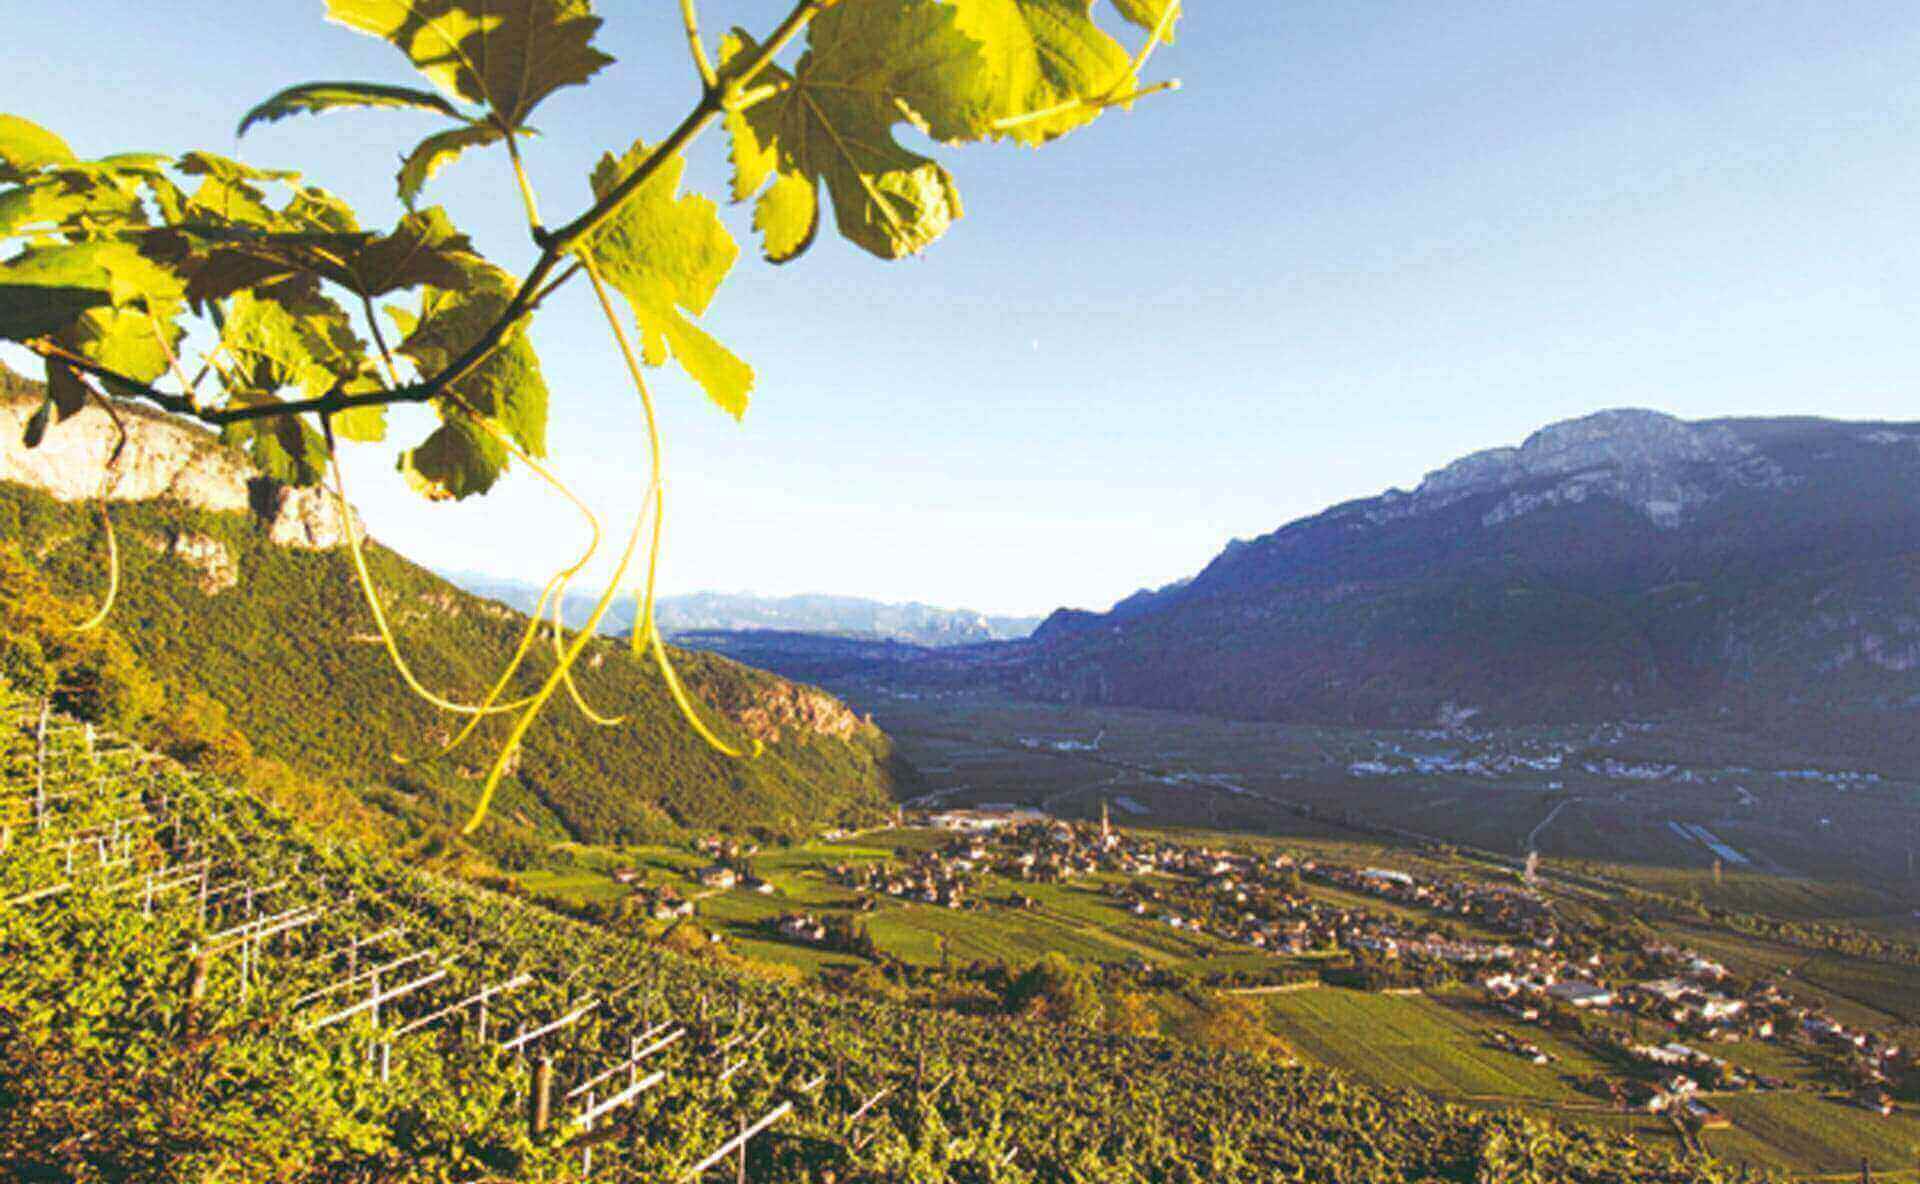 Dove le terre d'Italia si congiungono alle montagne austriache, l'uva raggiunge altitudini e panoram...